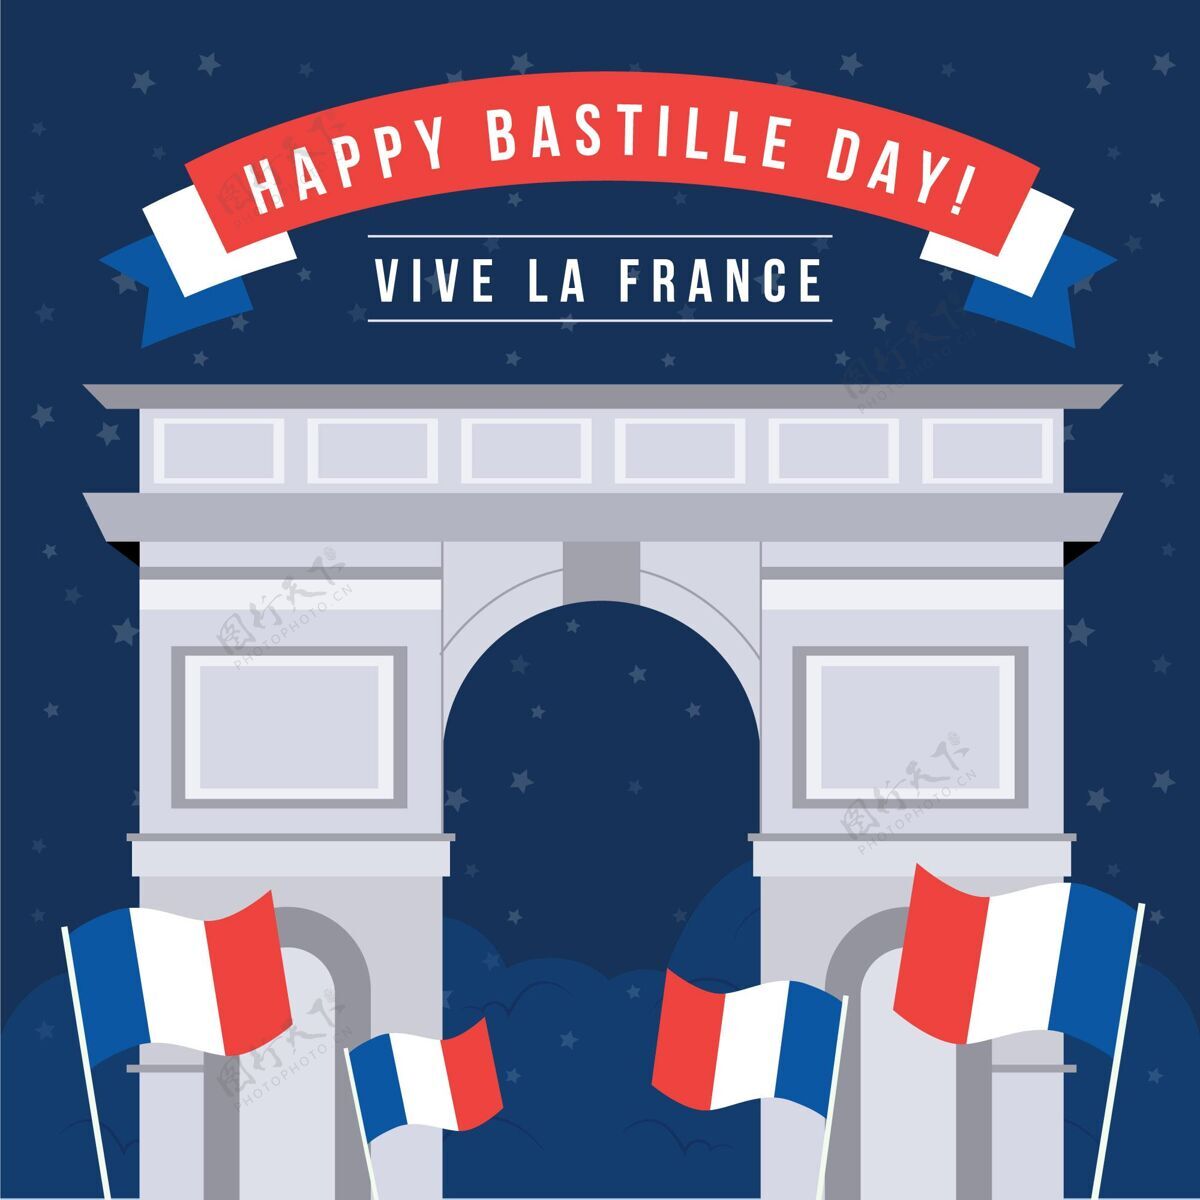 法国巴士底狱日插画法国国庆庆典平面设计